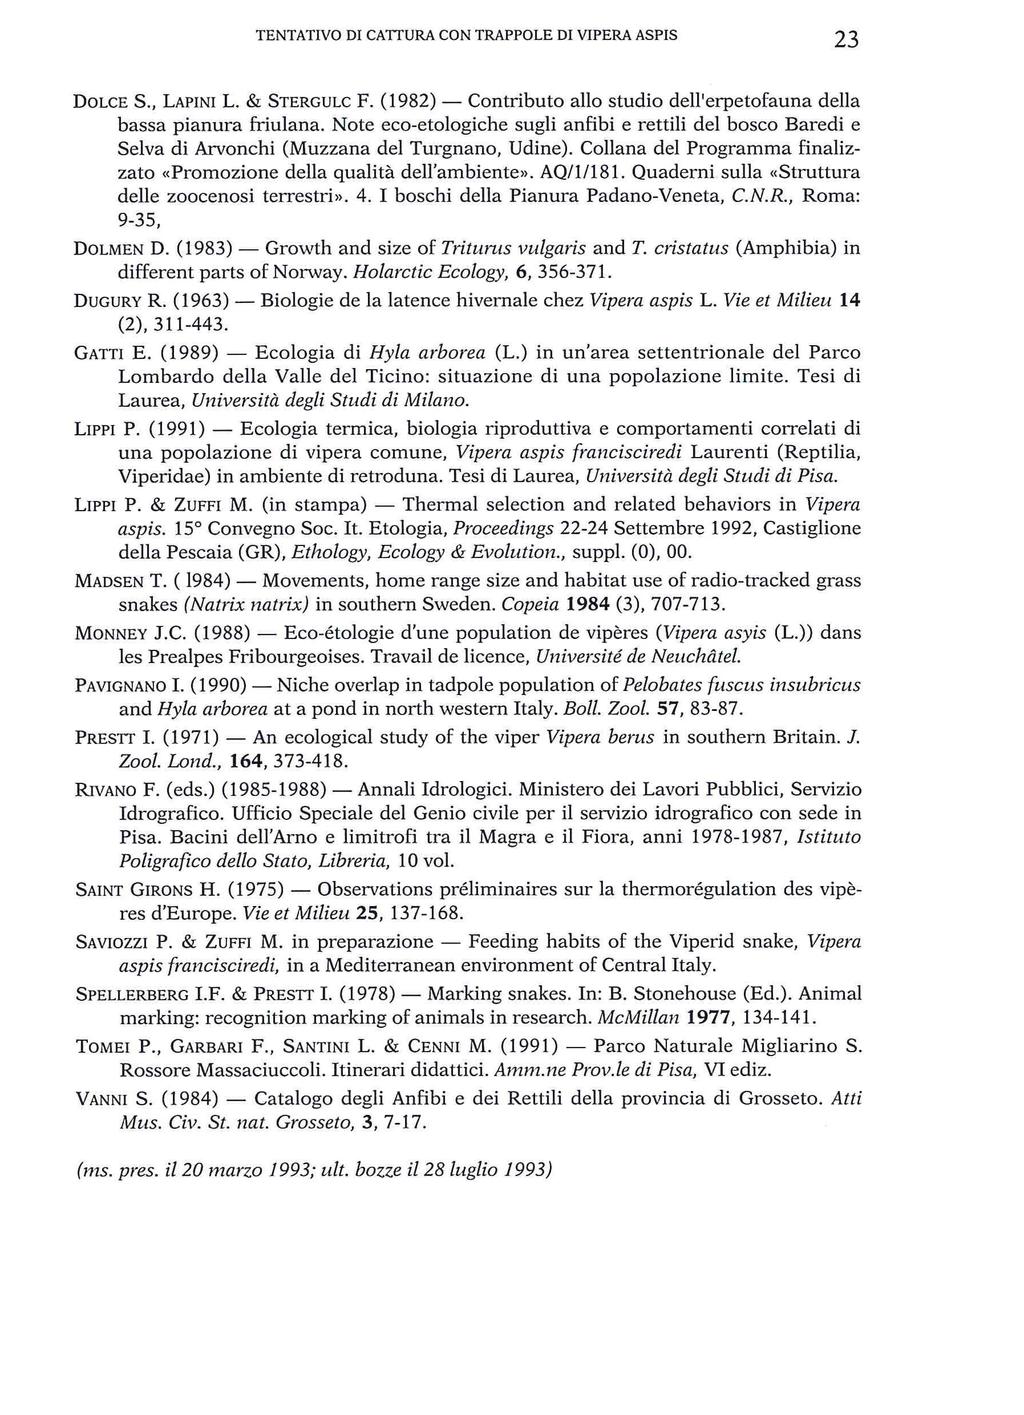 TENTATIVO DI CATTURA CON TRAPPOLE DI VIPERA ASPIS 23 DOLCE S., LAPINI L. & STERGULC F. (1982) - Contributo allo studio dell'erpetofauna della bassa pianura friulana.